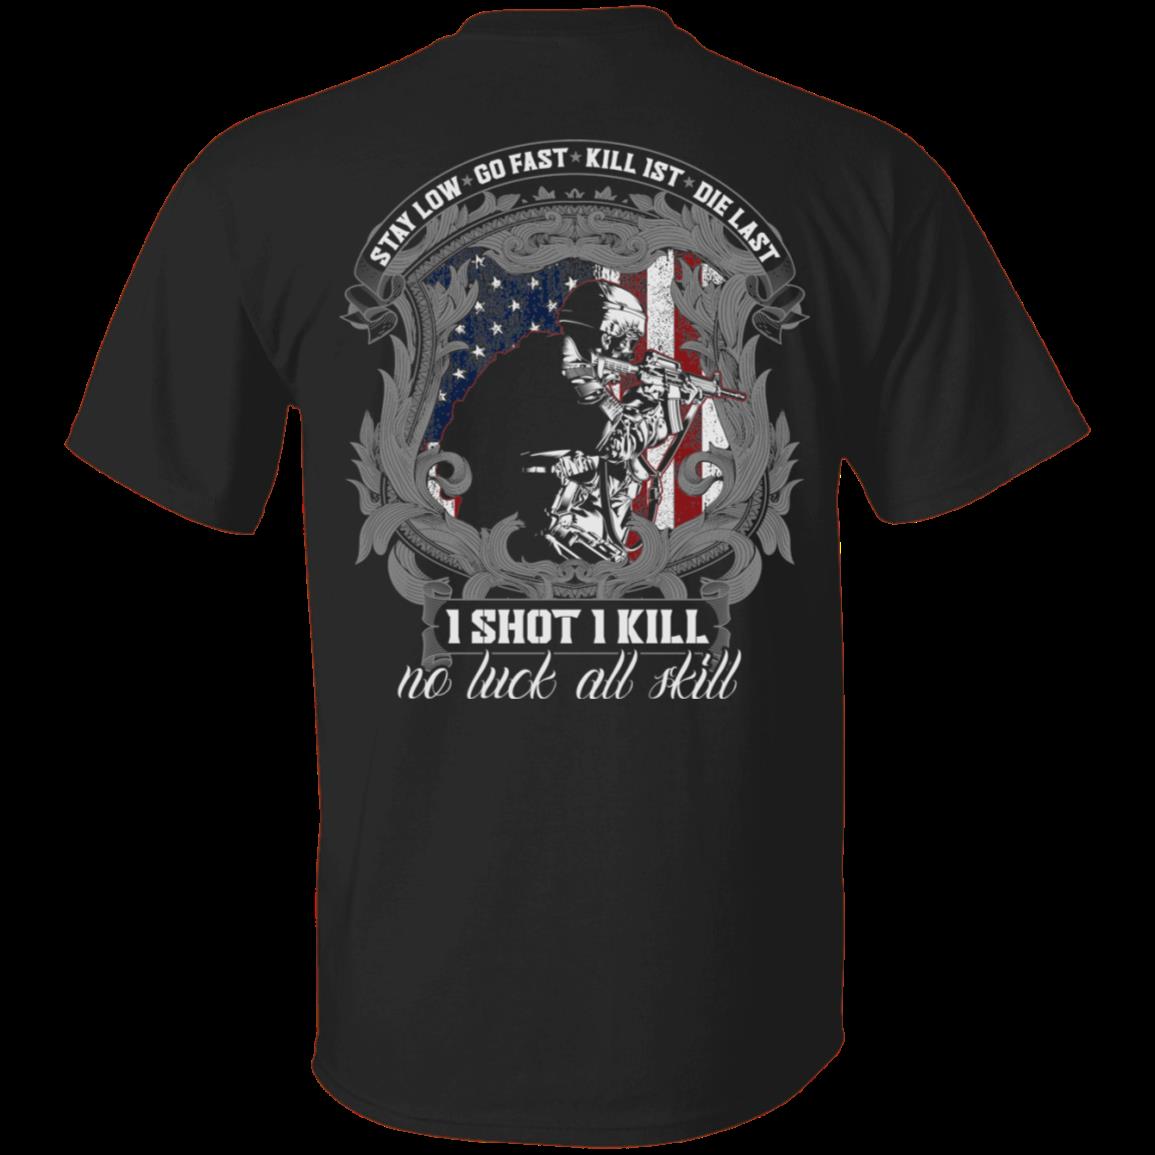 Veteran Shirt, Father's Day Shirt, Stay Low Go Fast Kill 1St Die Last 1 Shot 1 Kill No Luck All Skill T-Shirt KM2705